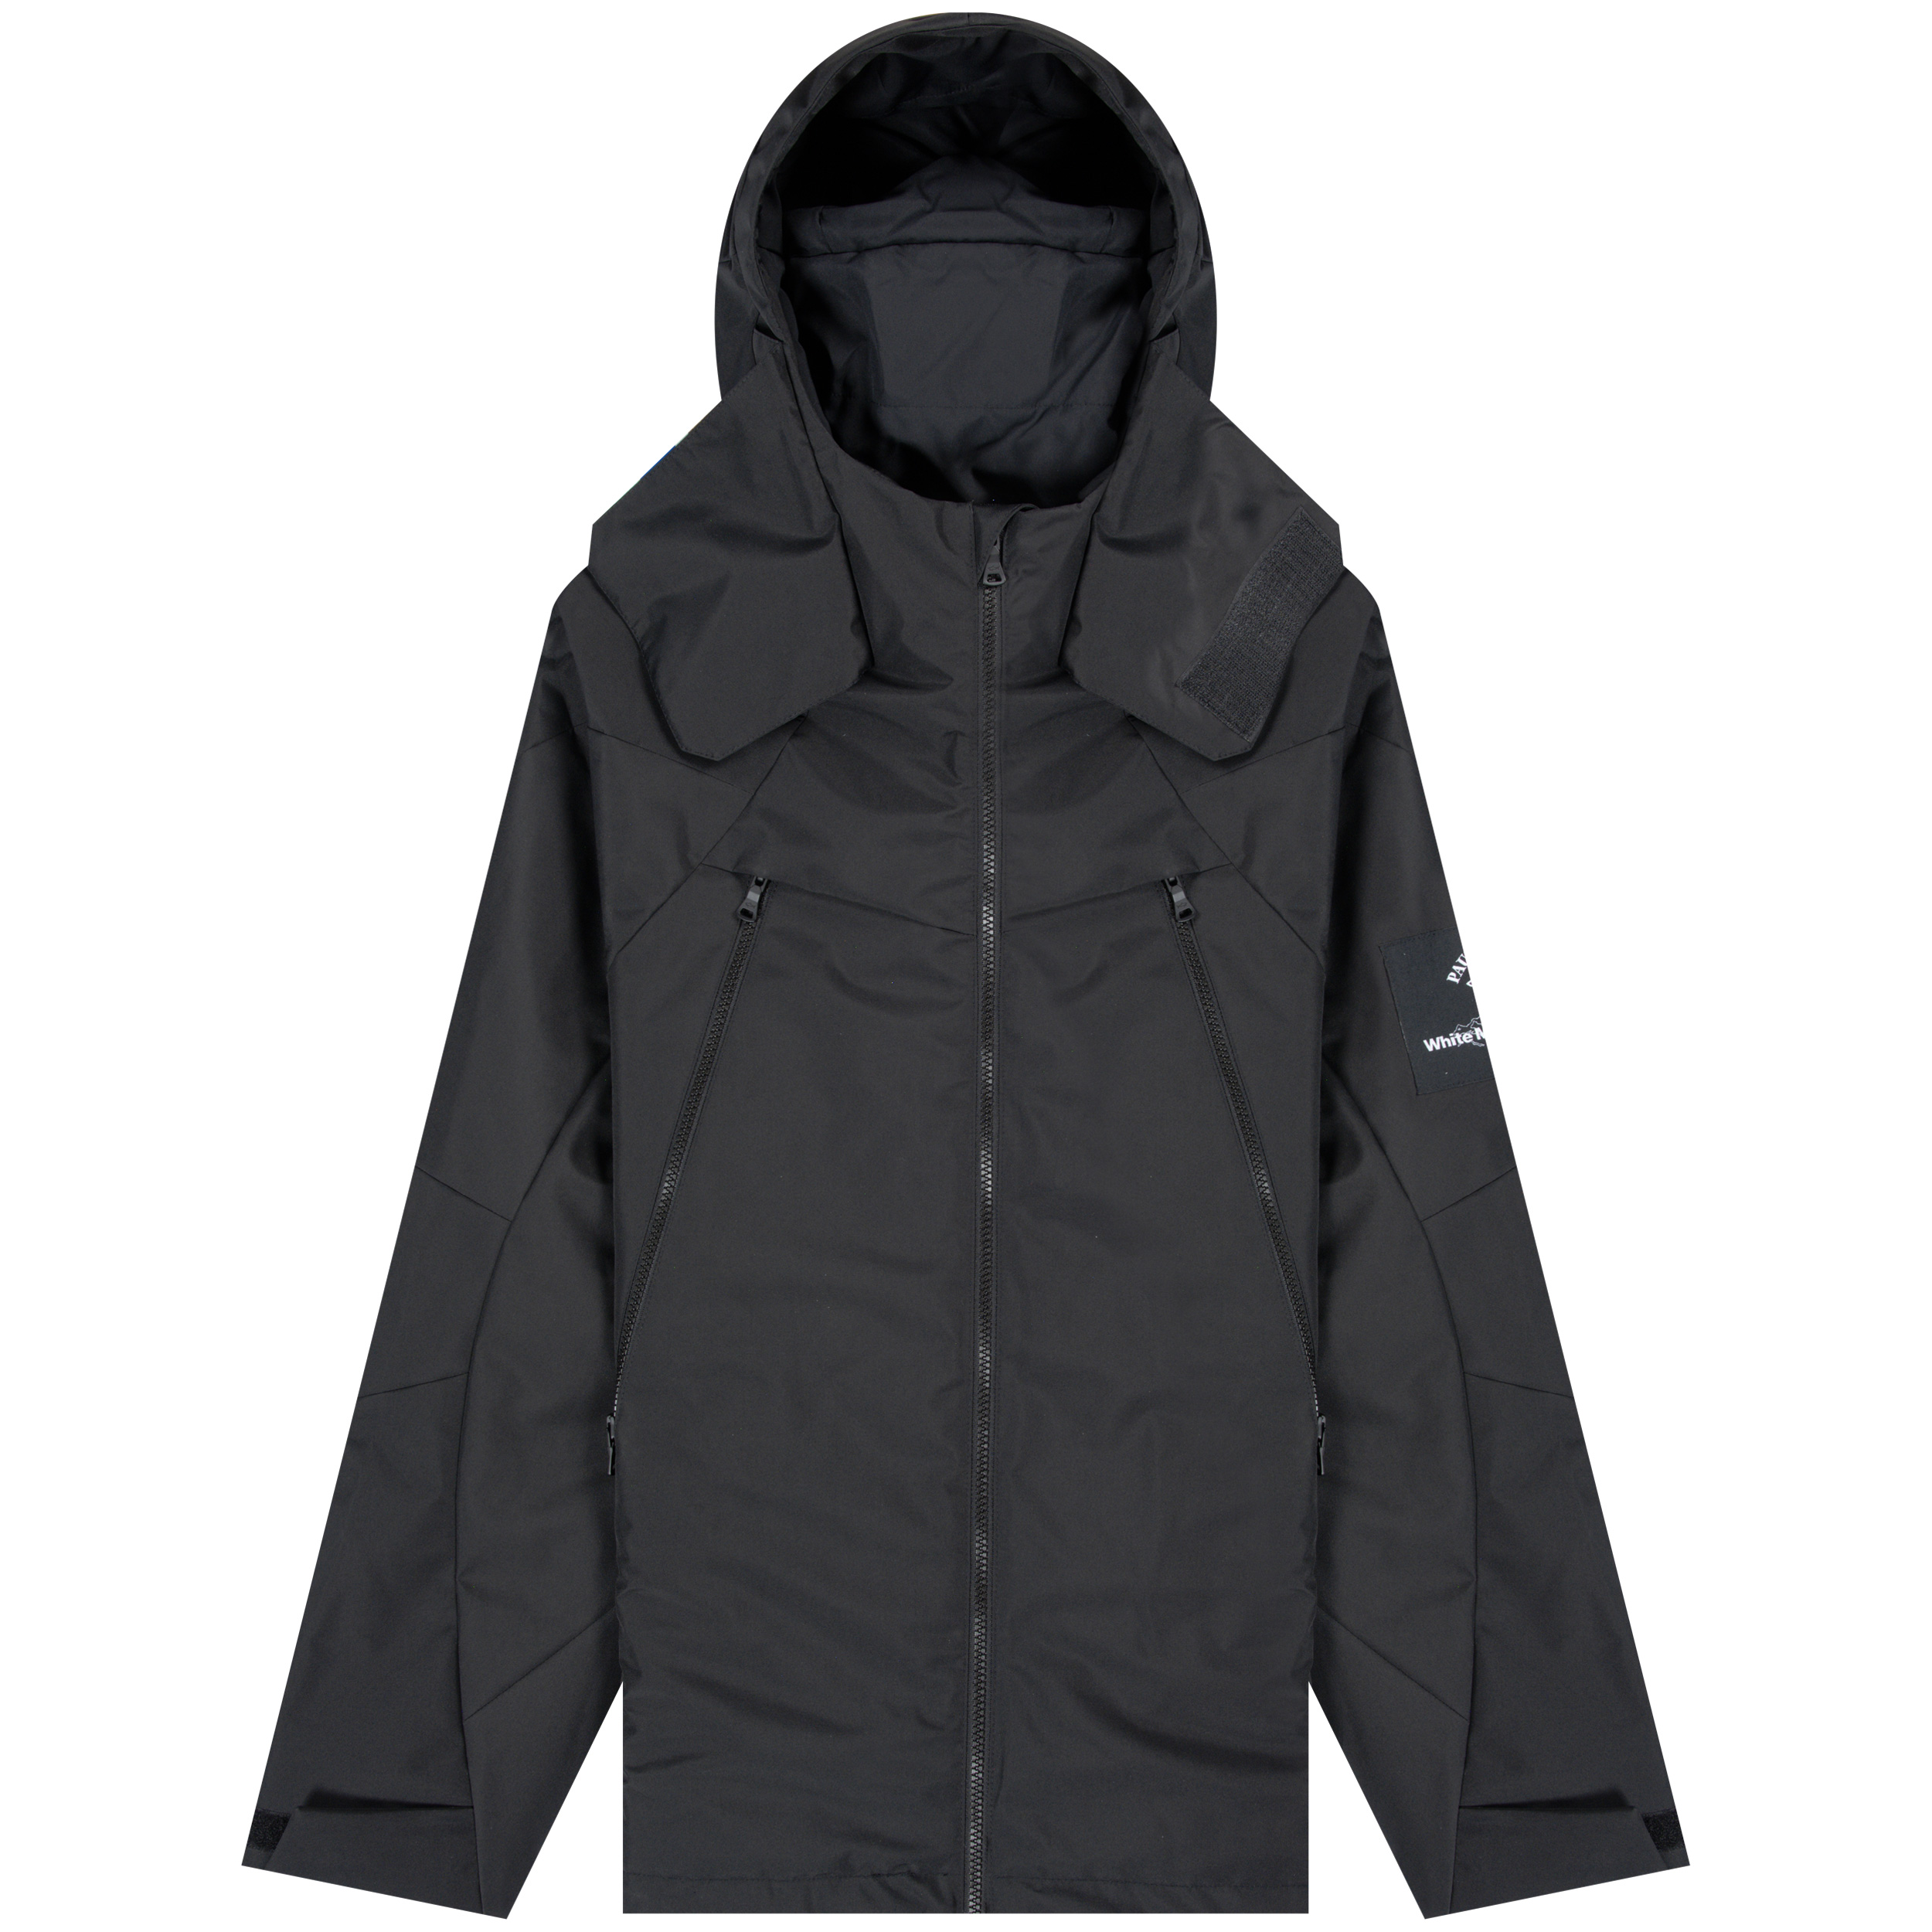 Paul & Shark White Mountaineering ’Typhoon’ Full Zip Jacket Black